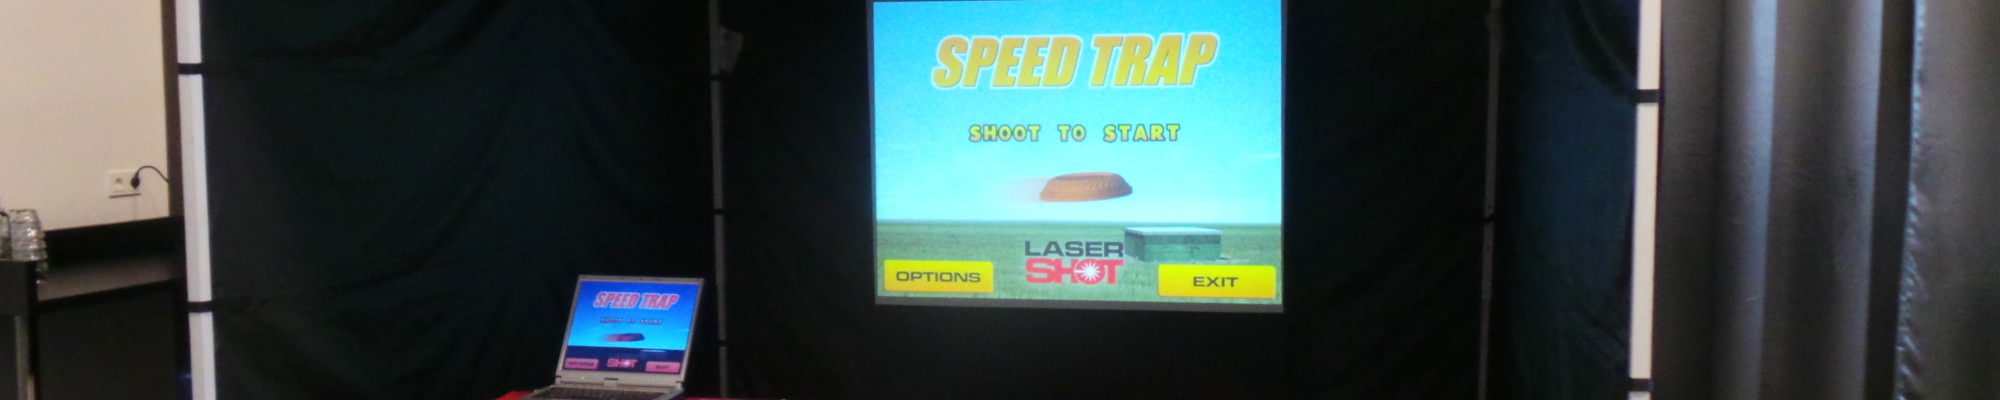 Lasershot